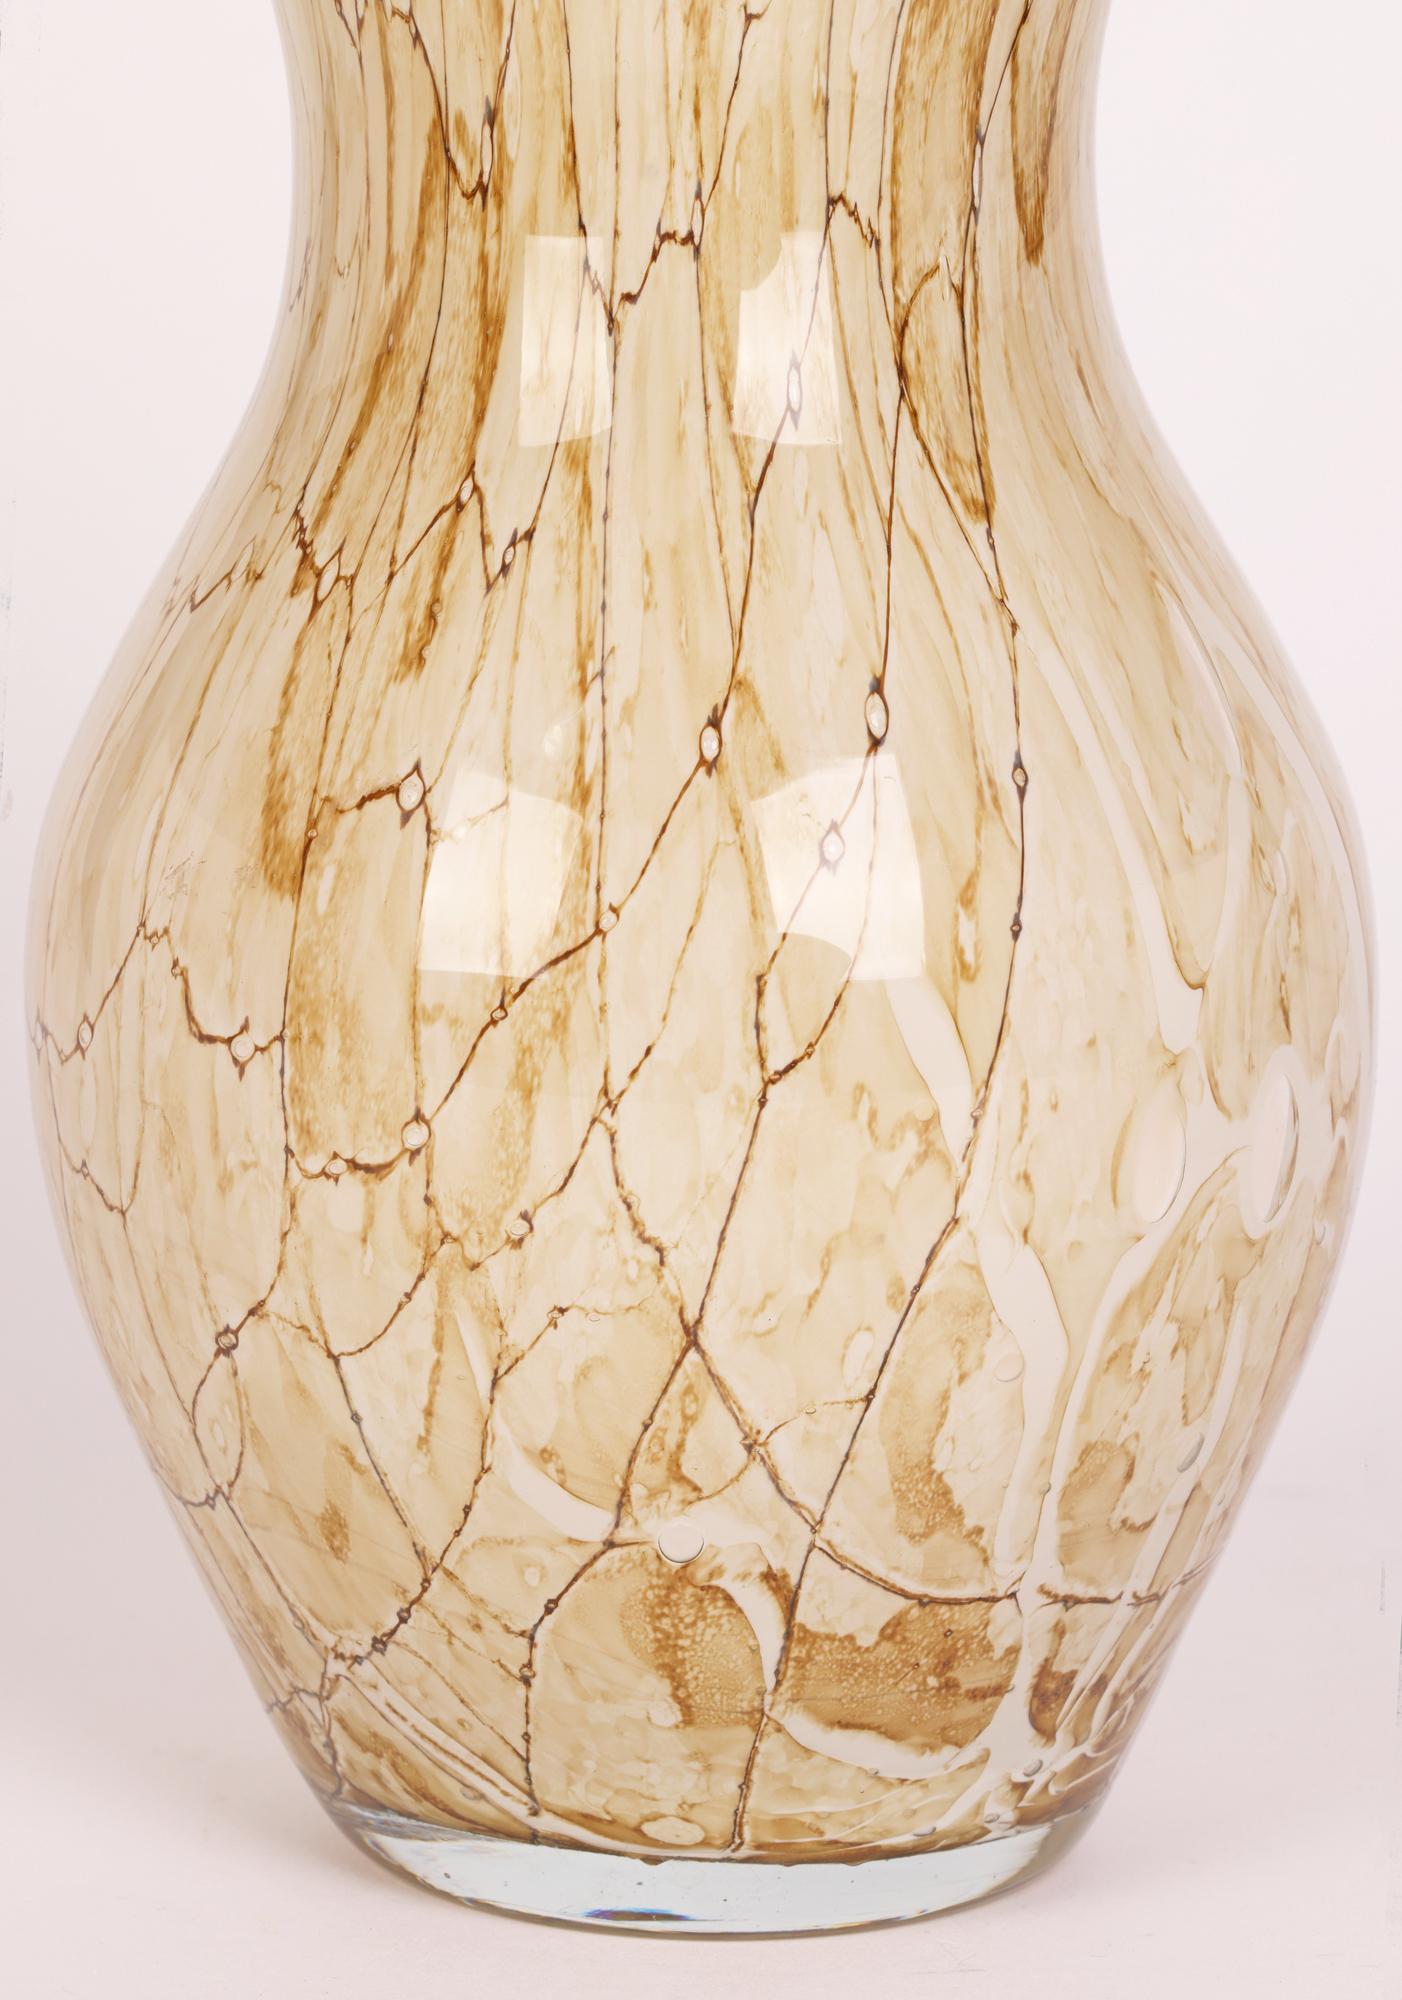 Eine stilvolle, mundgeblasene Vase aus polnischem Kunstglas, die der Glasmanufaktur Jozefina, Krosno, zugeschrieben wird und aus der Zeit um 1980 stammt.

Die Fabrik Josefina wurde 1980 in Krosno, Polen, von Jozef Jankowski, einem bekannten